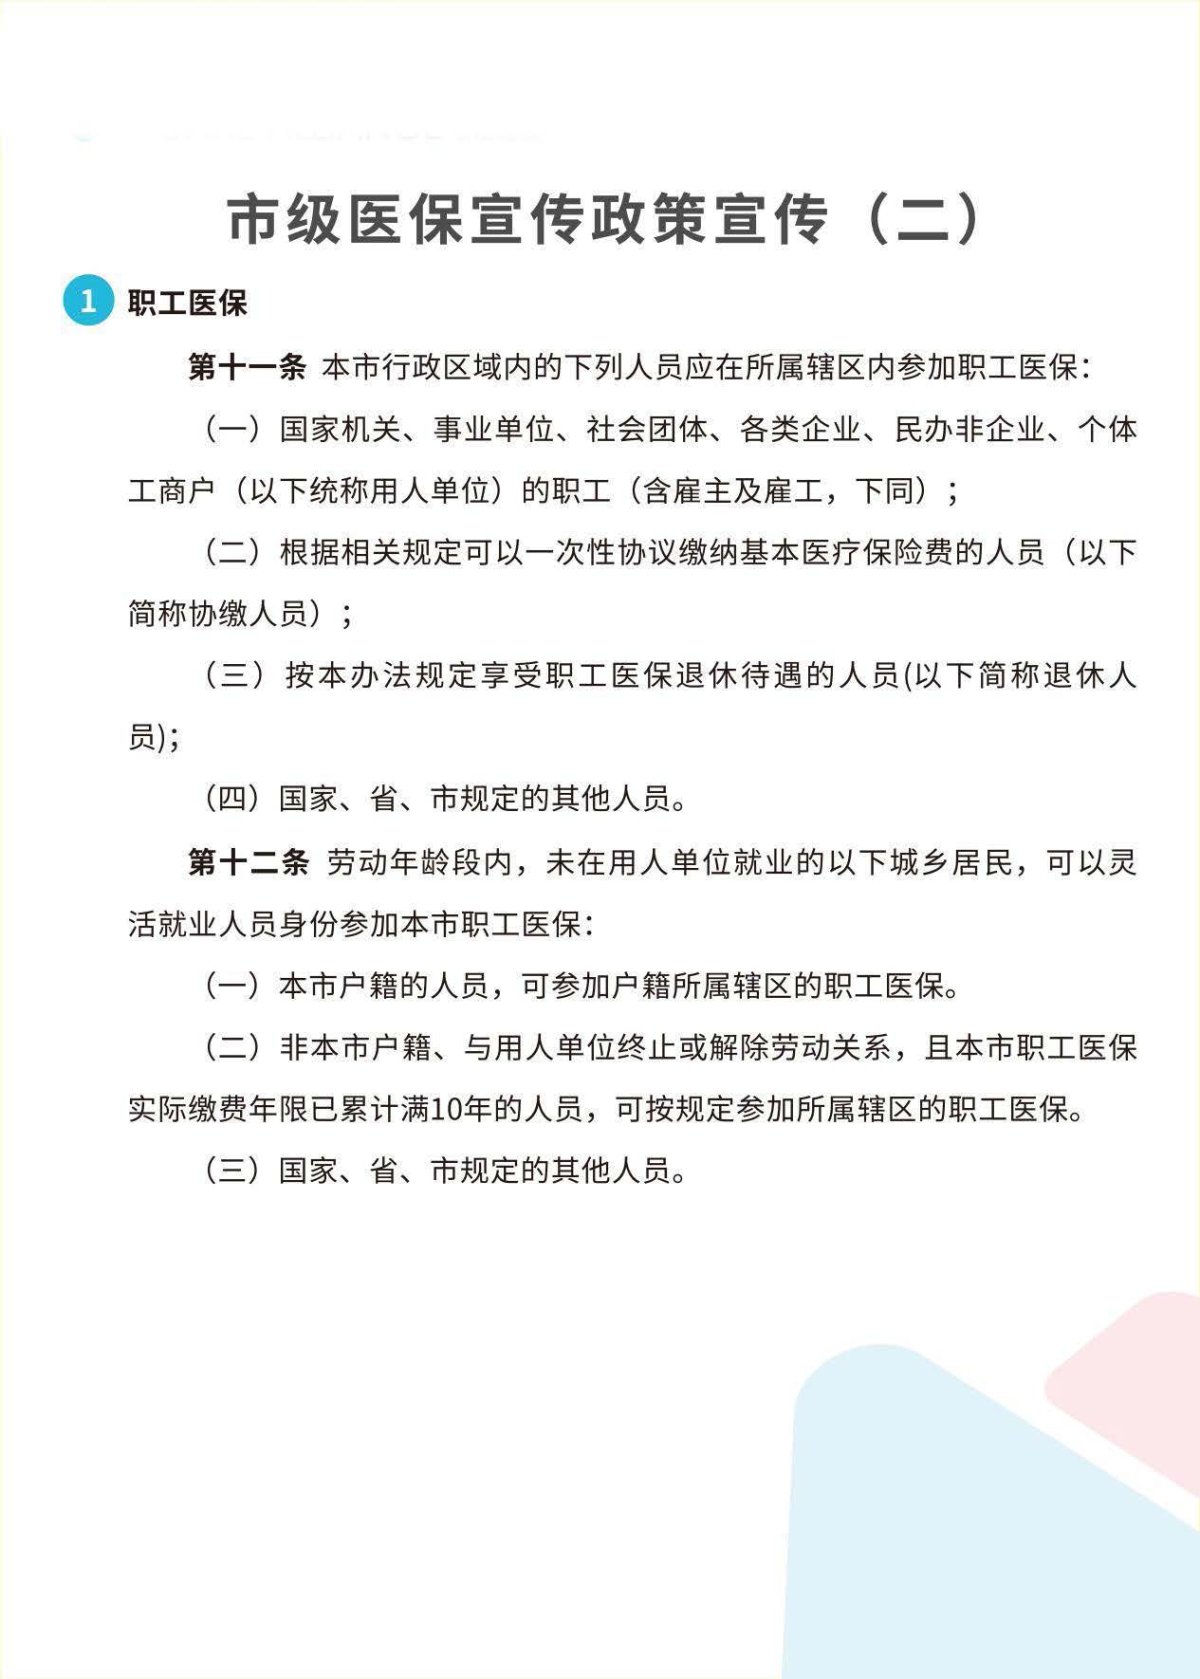 杭州顾连玺桥康复医院网站-医保政策宣传_页面_2